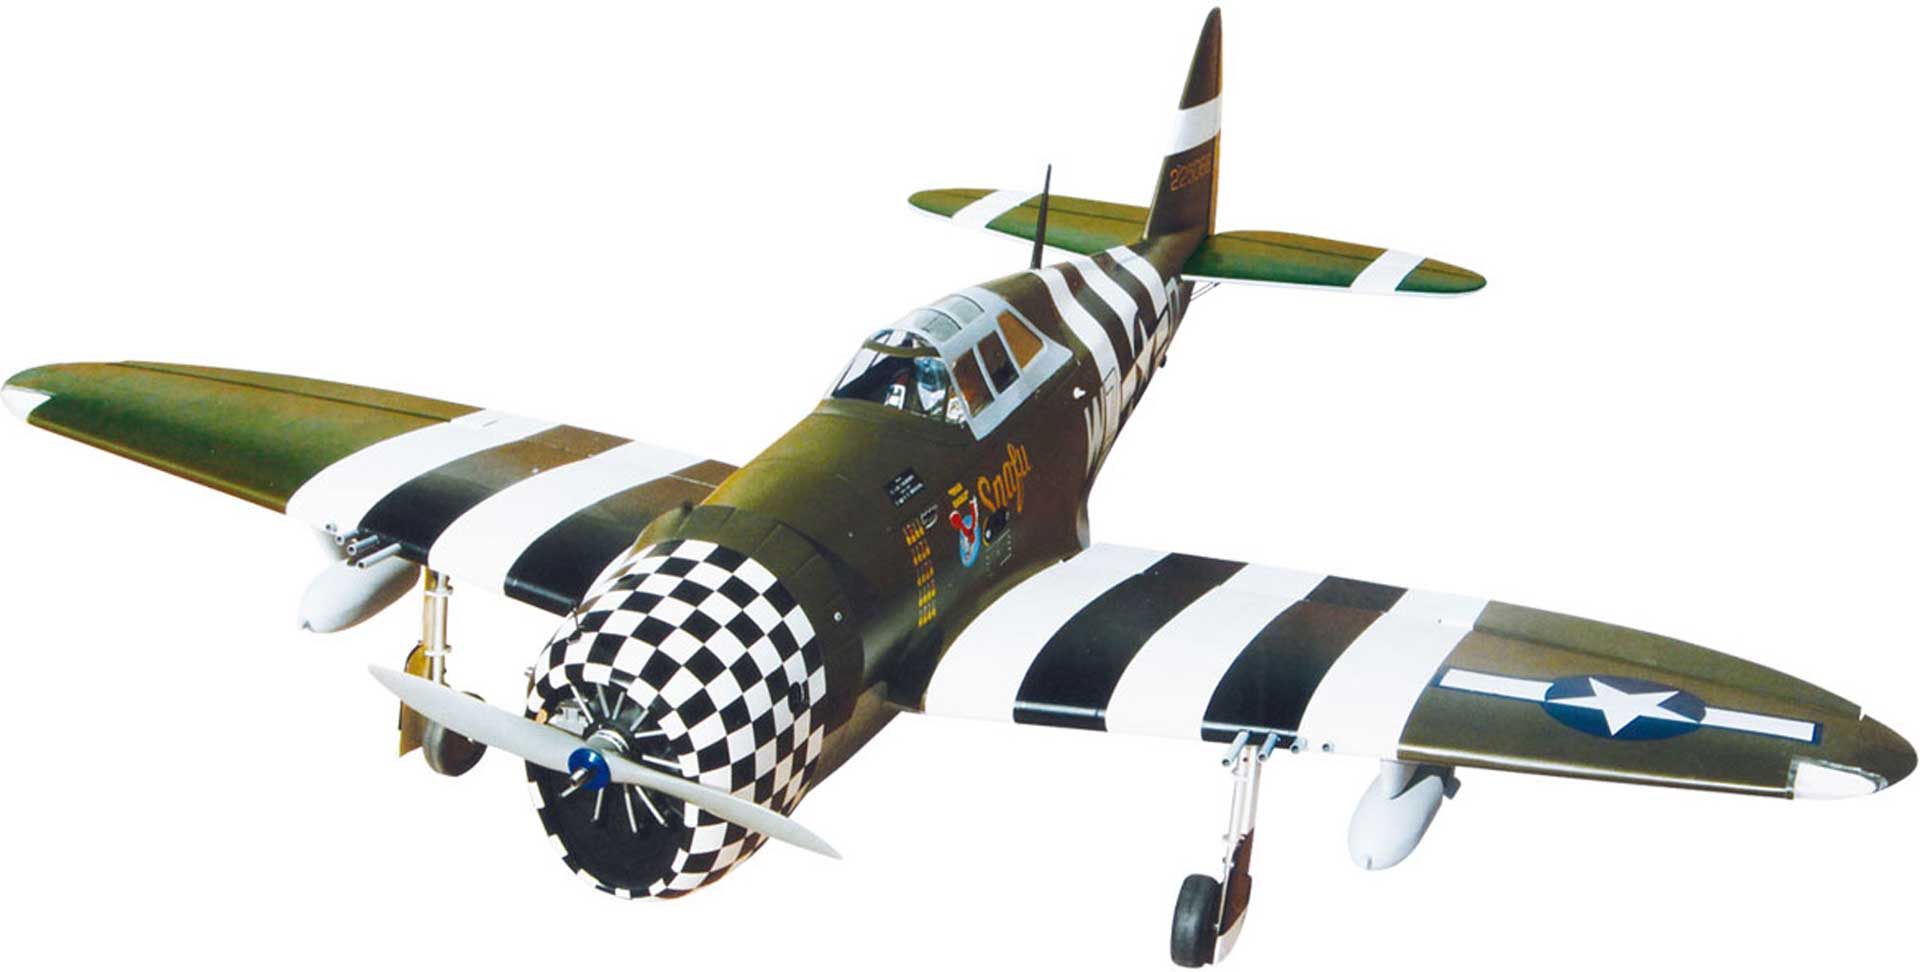 Seagull Models ( SG-Models ) P-47G THUNDERBOLT 60 "SNAFU" MIT EINZIEHFAHRWERK UND BELEUCHTUNG